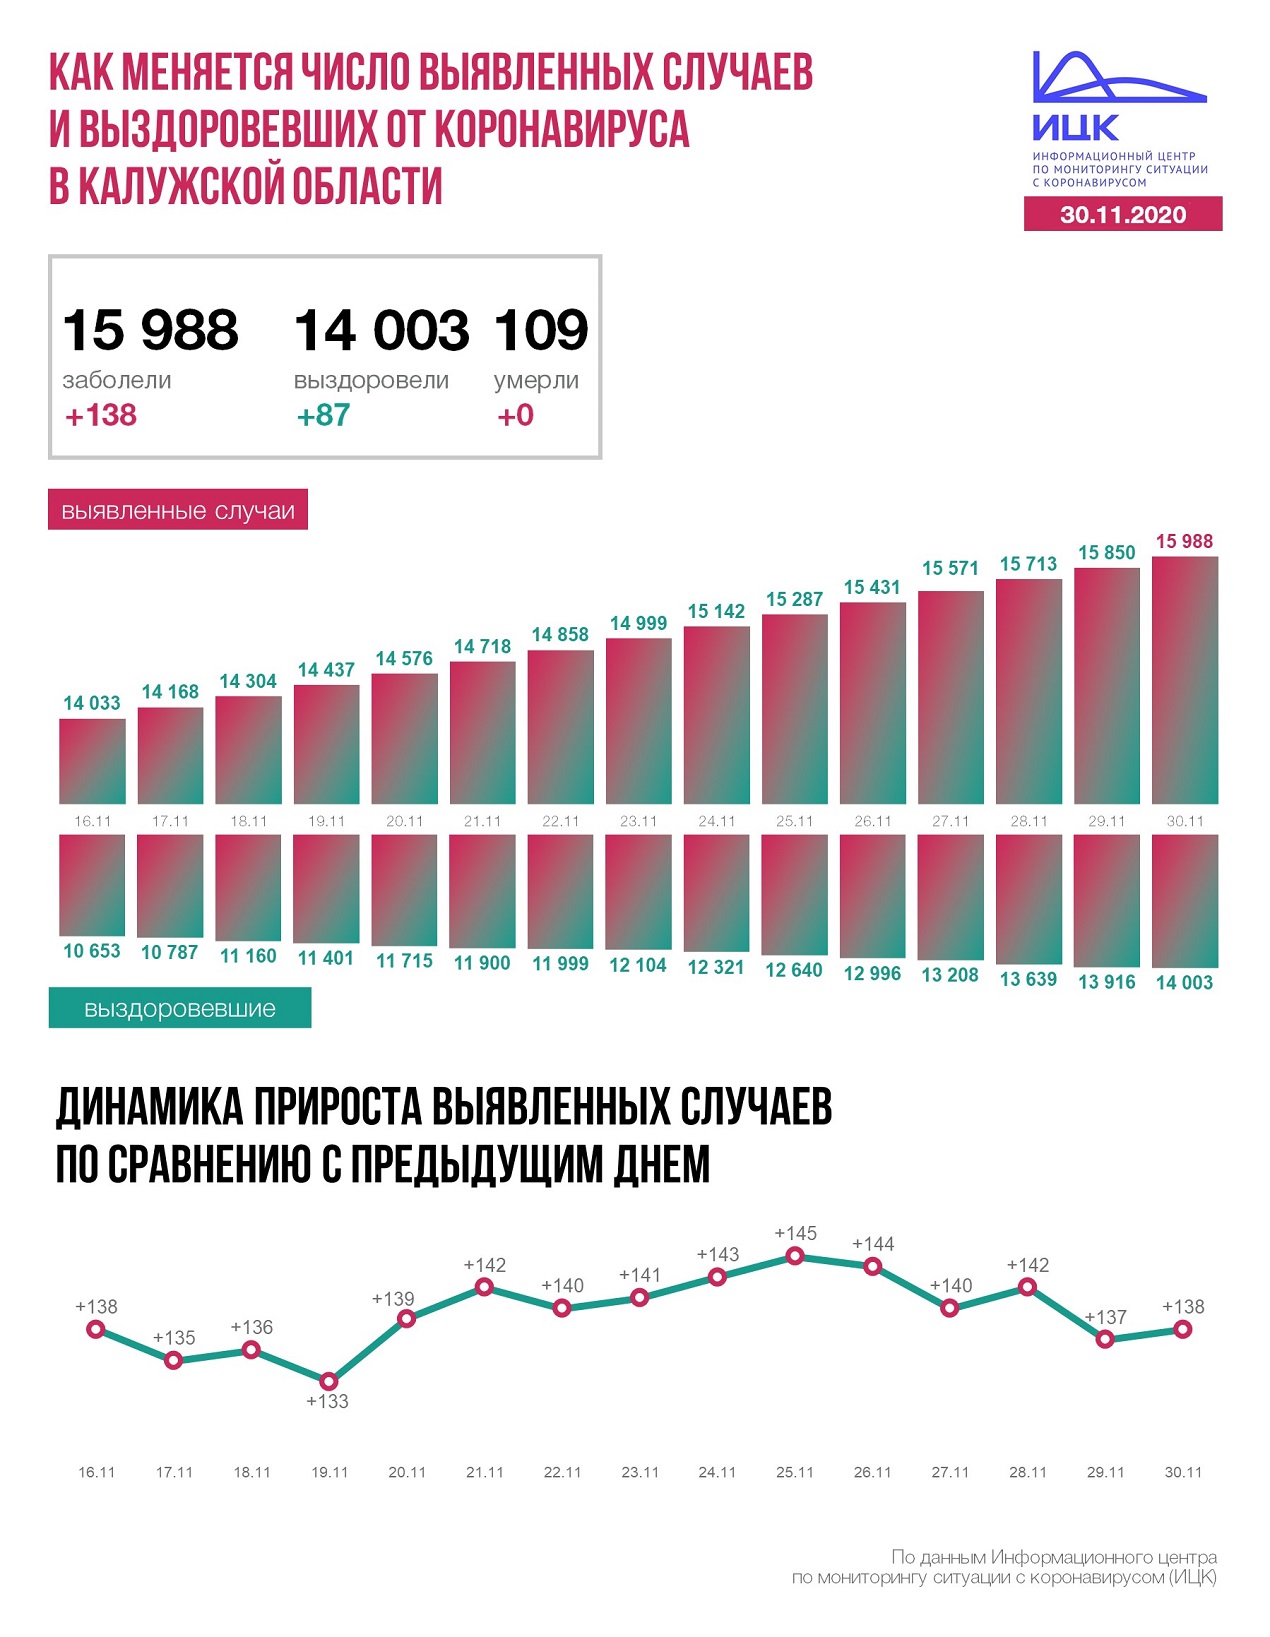 Официальные данные по коронавирсу в Калужской области на 30 ноября 2020 года.